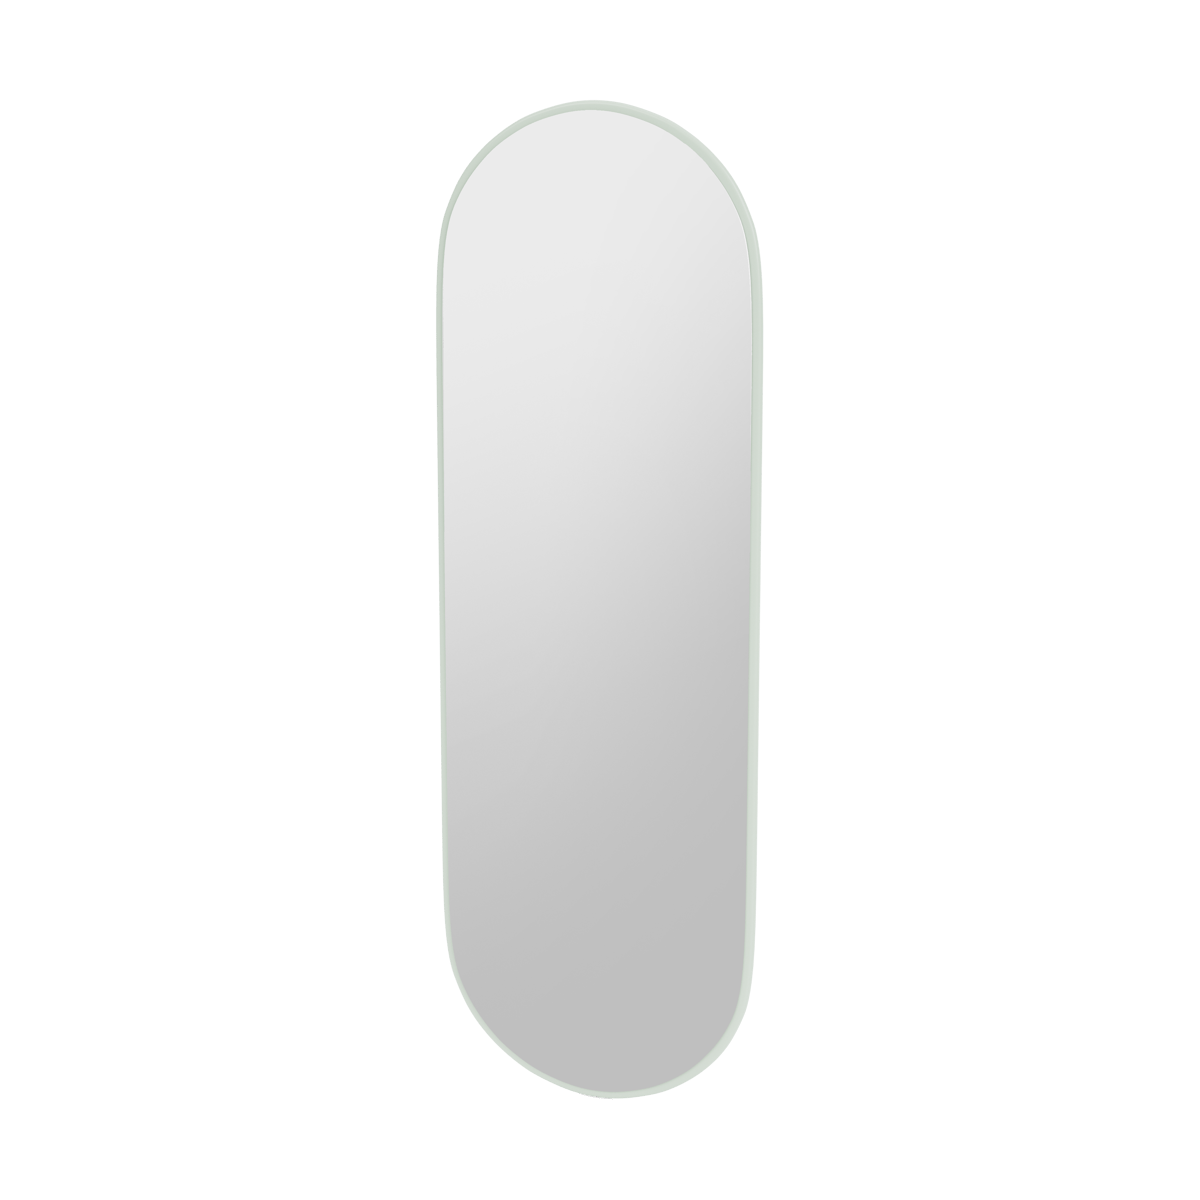 Montana FIGUUR Mirror Spiegel - SP824R Mist